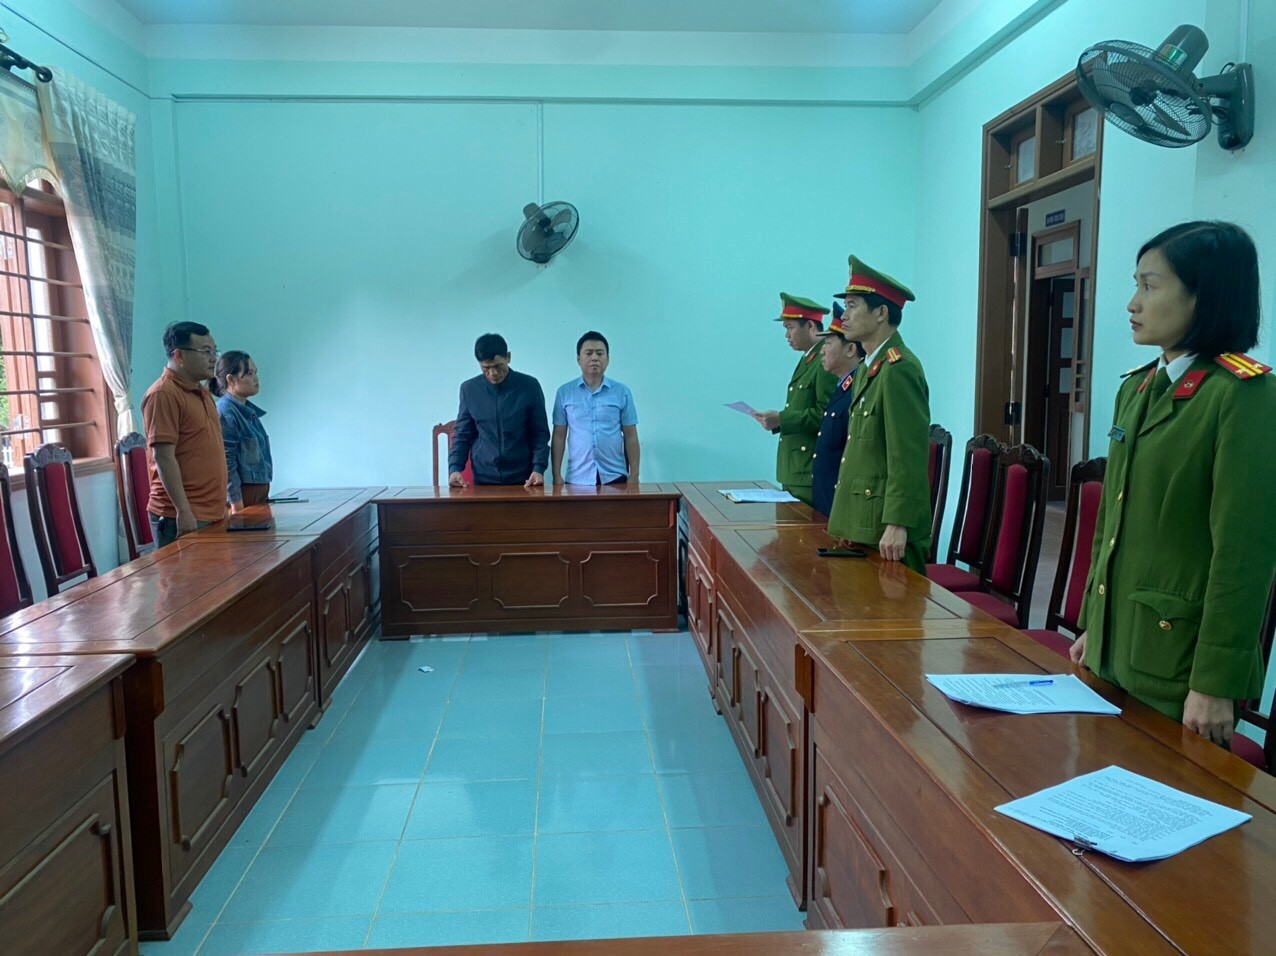 An ninh - Hình sự - Bắt nguyên lãnh đạo một phòng giao dịch ngân hàng ở Quảng Trị